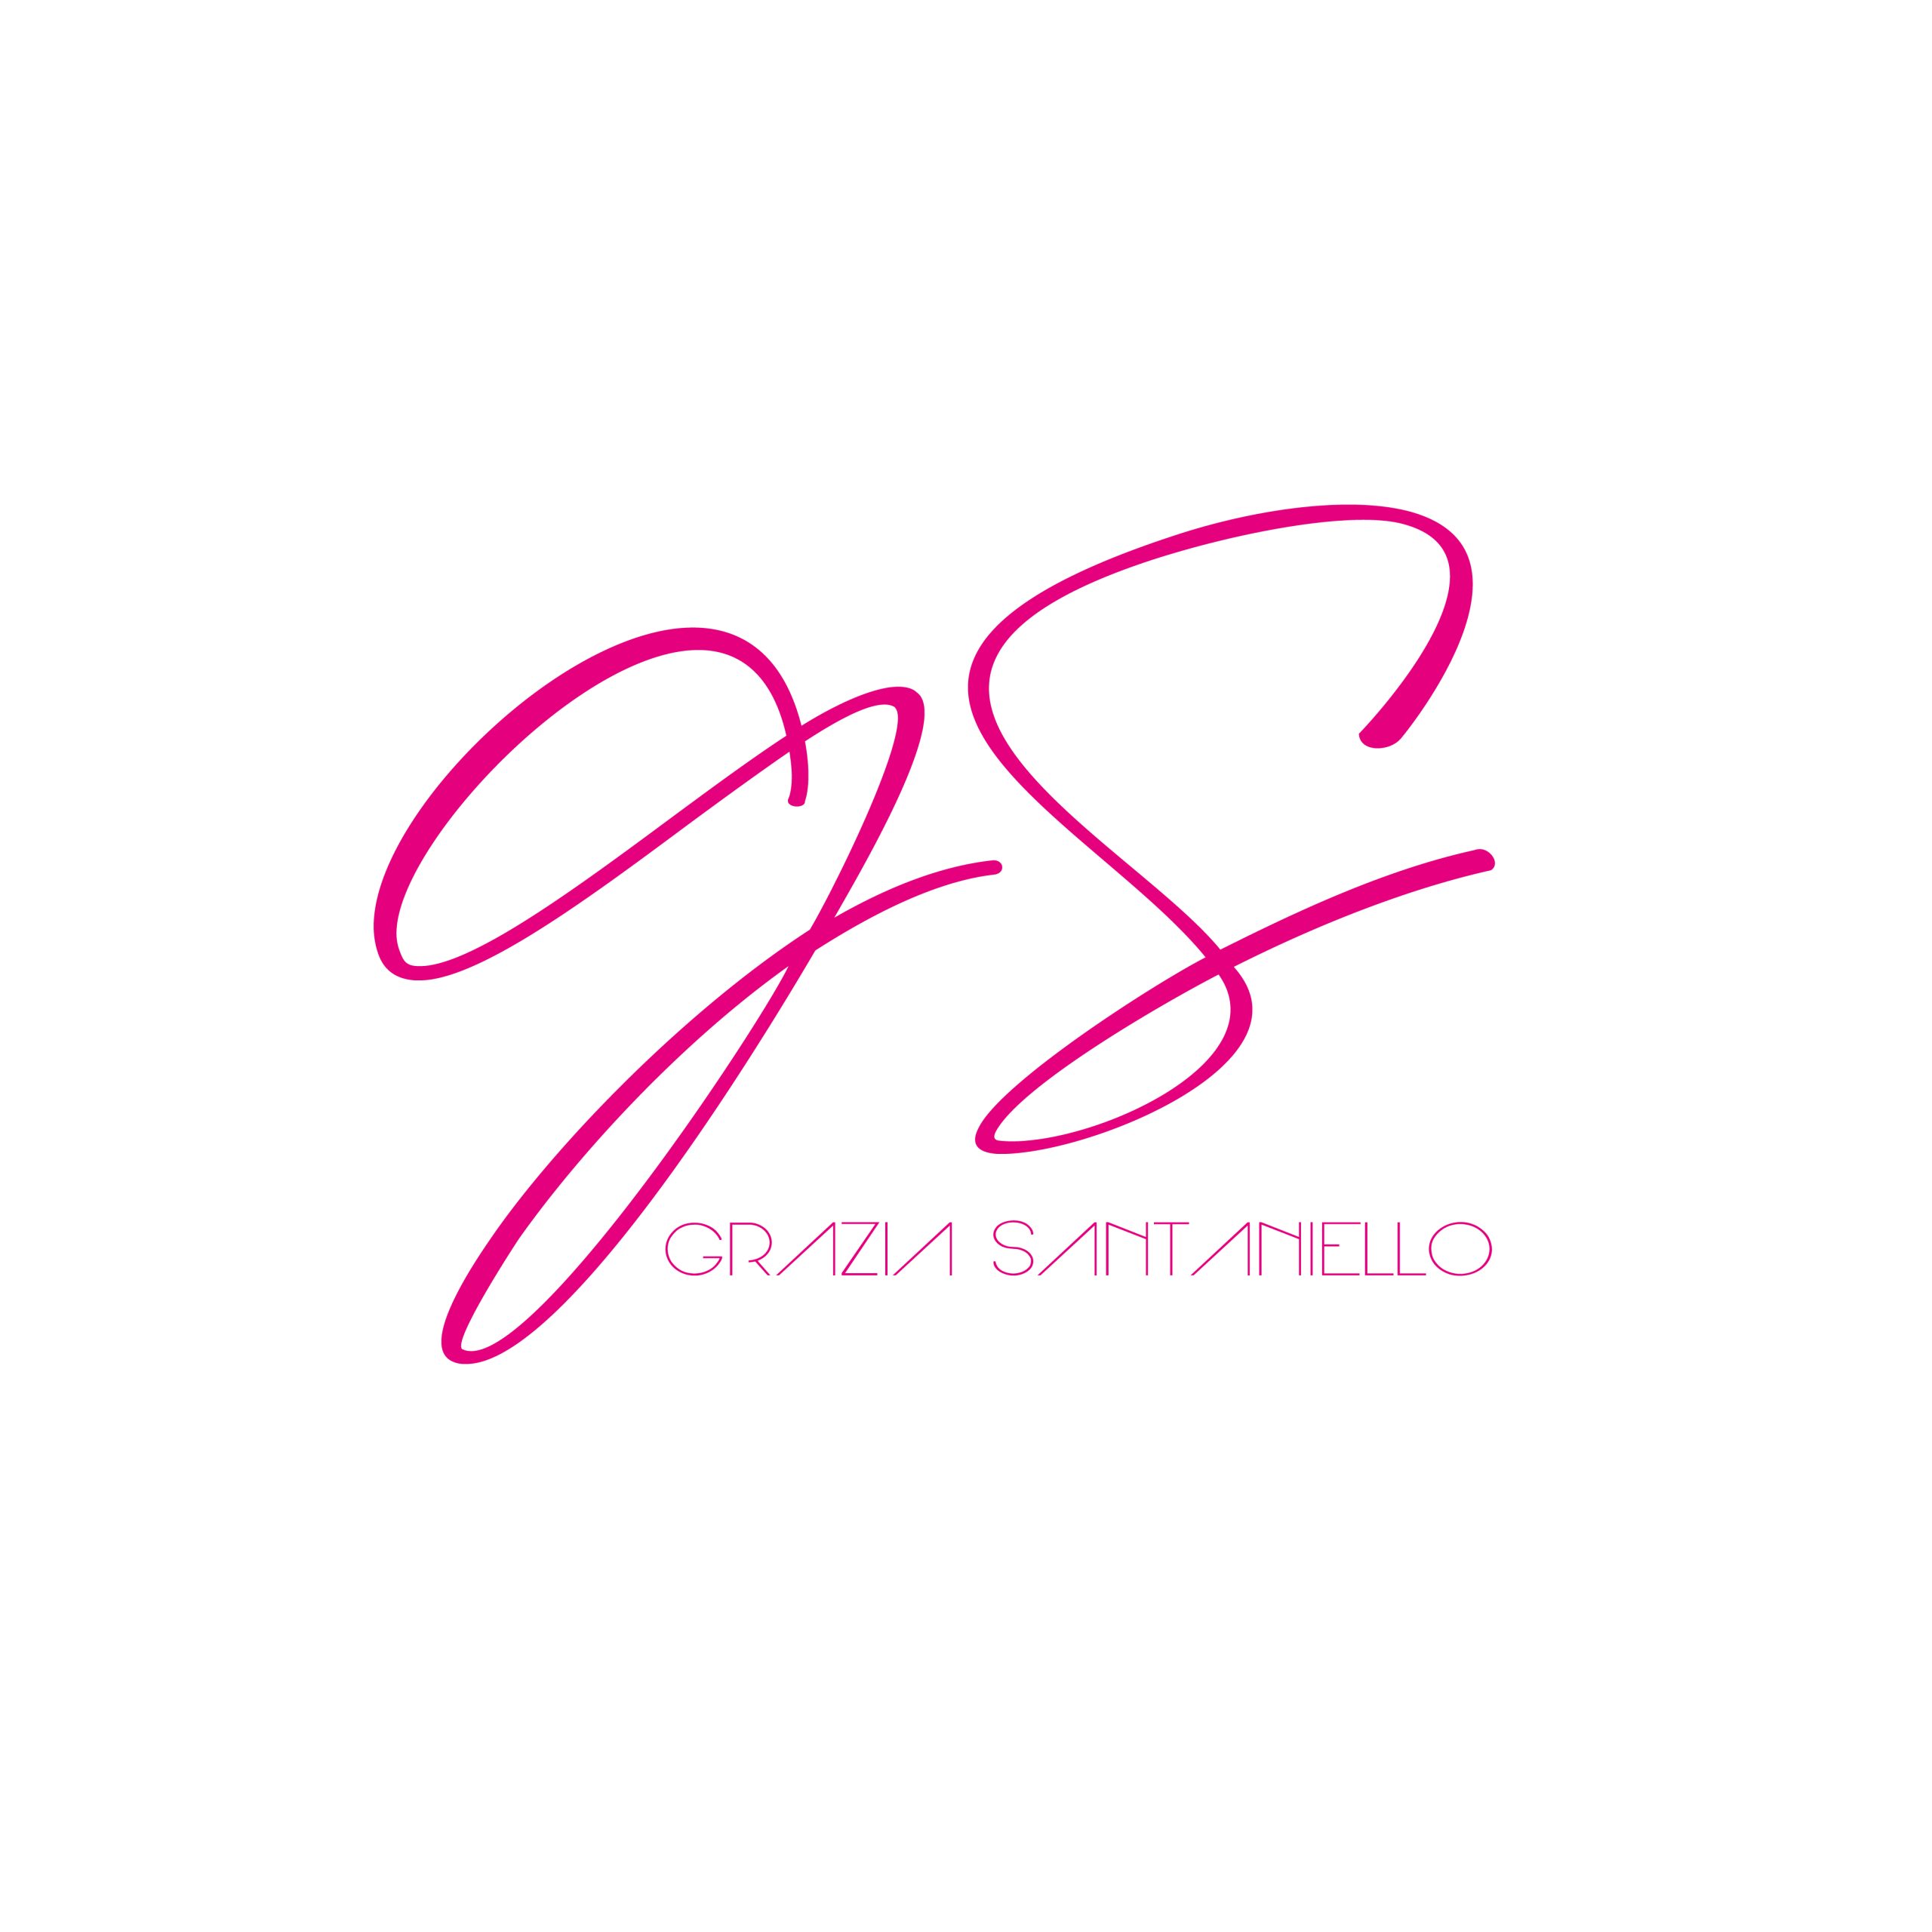 Grazia Santaniello - logo1000x1000-01